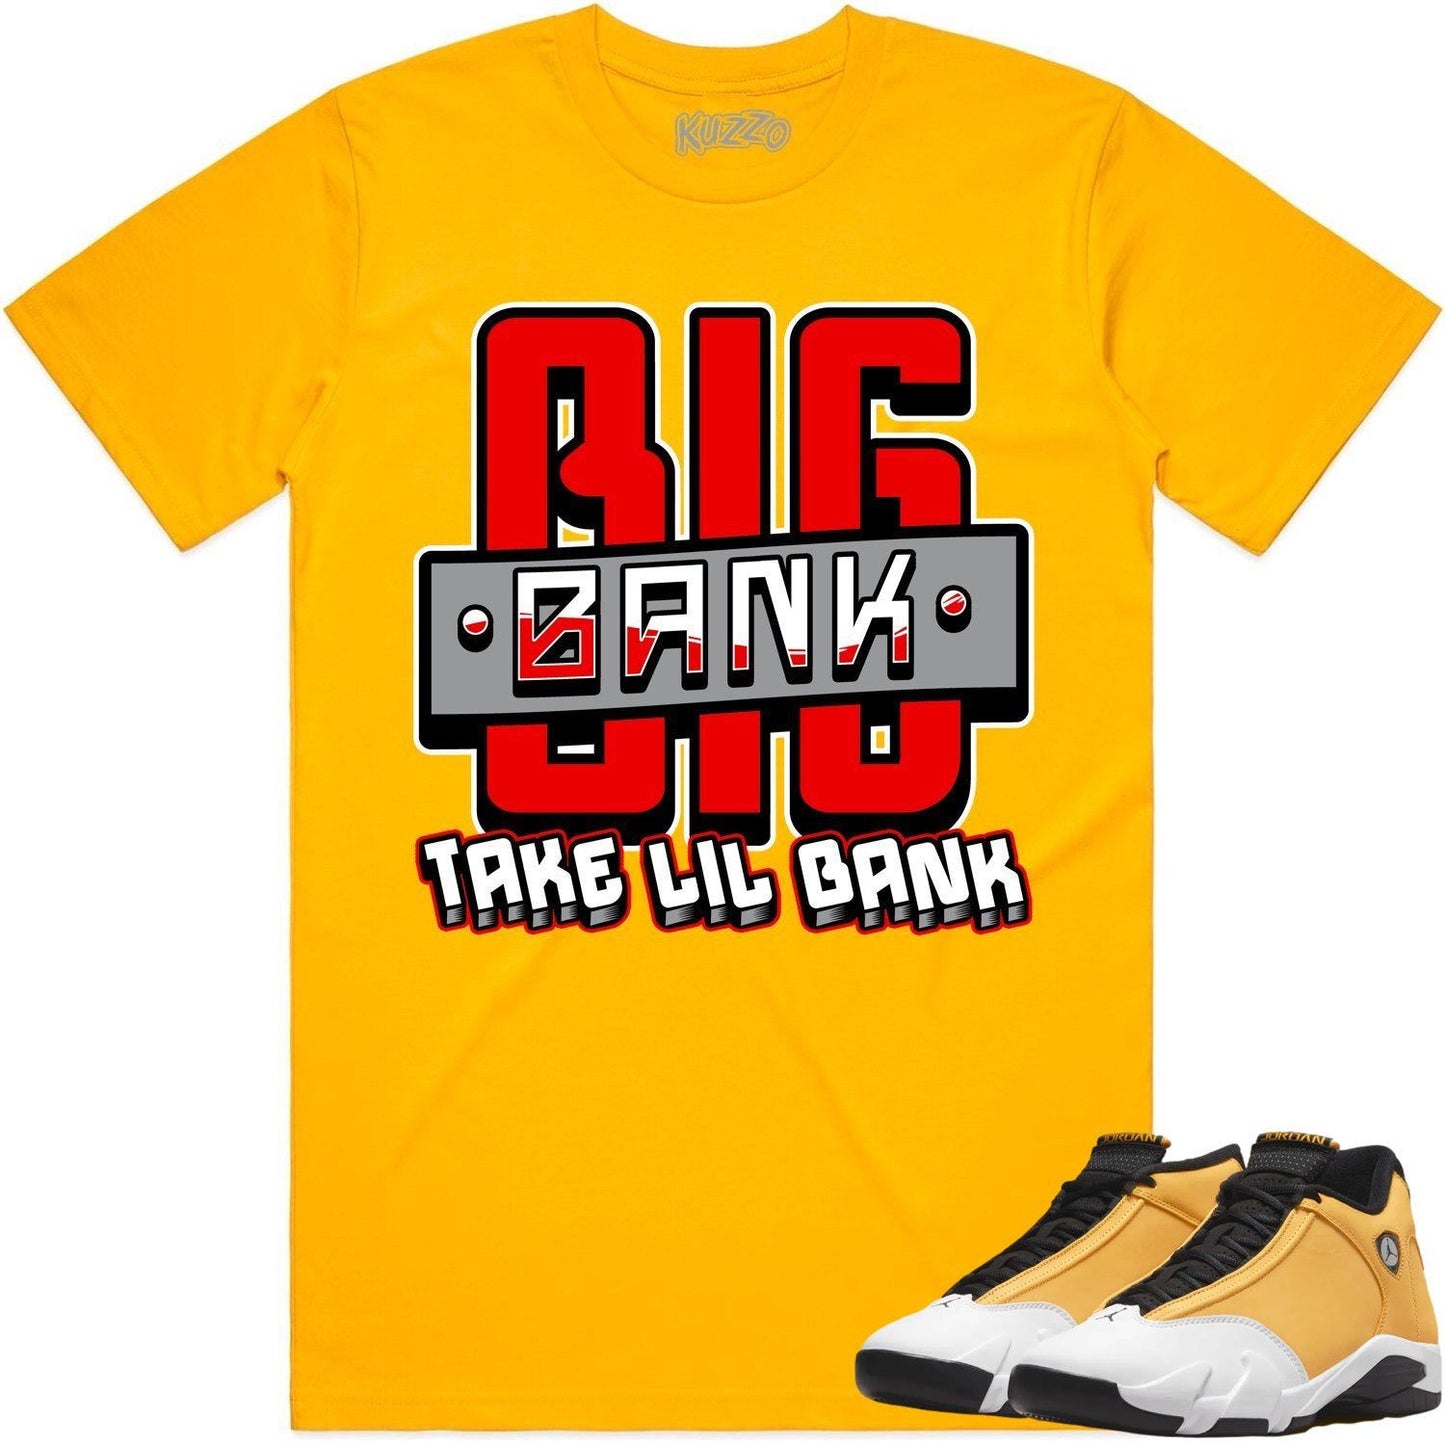 Ginger Gold 14s Shirt - Jordan Retro 14 Sneaker Tees - Big Bank